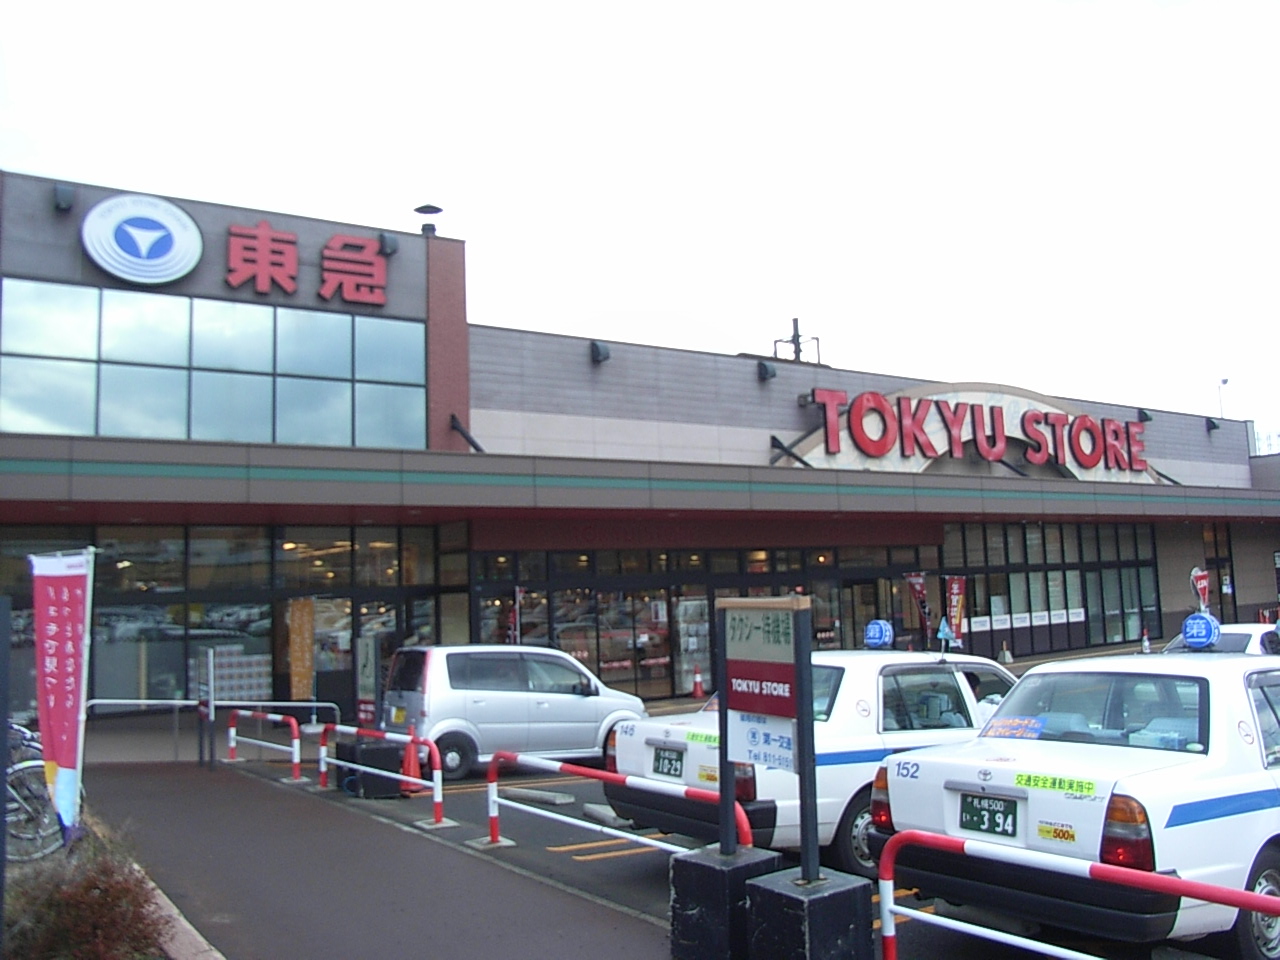 Supermarket. Toko Store Toyohira store up to (super) 580m